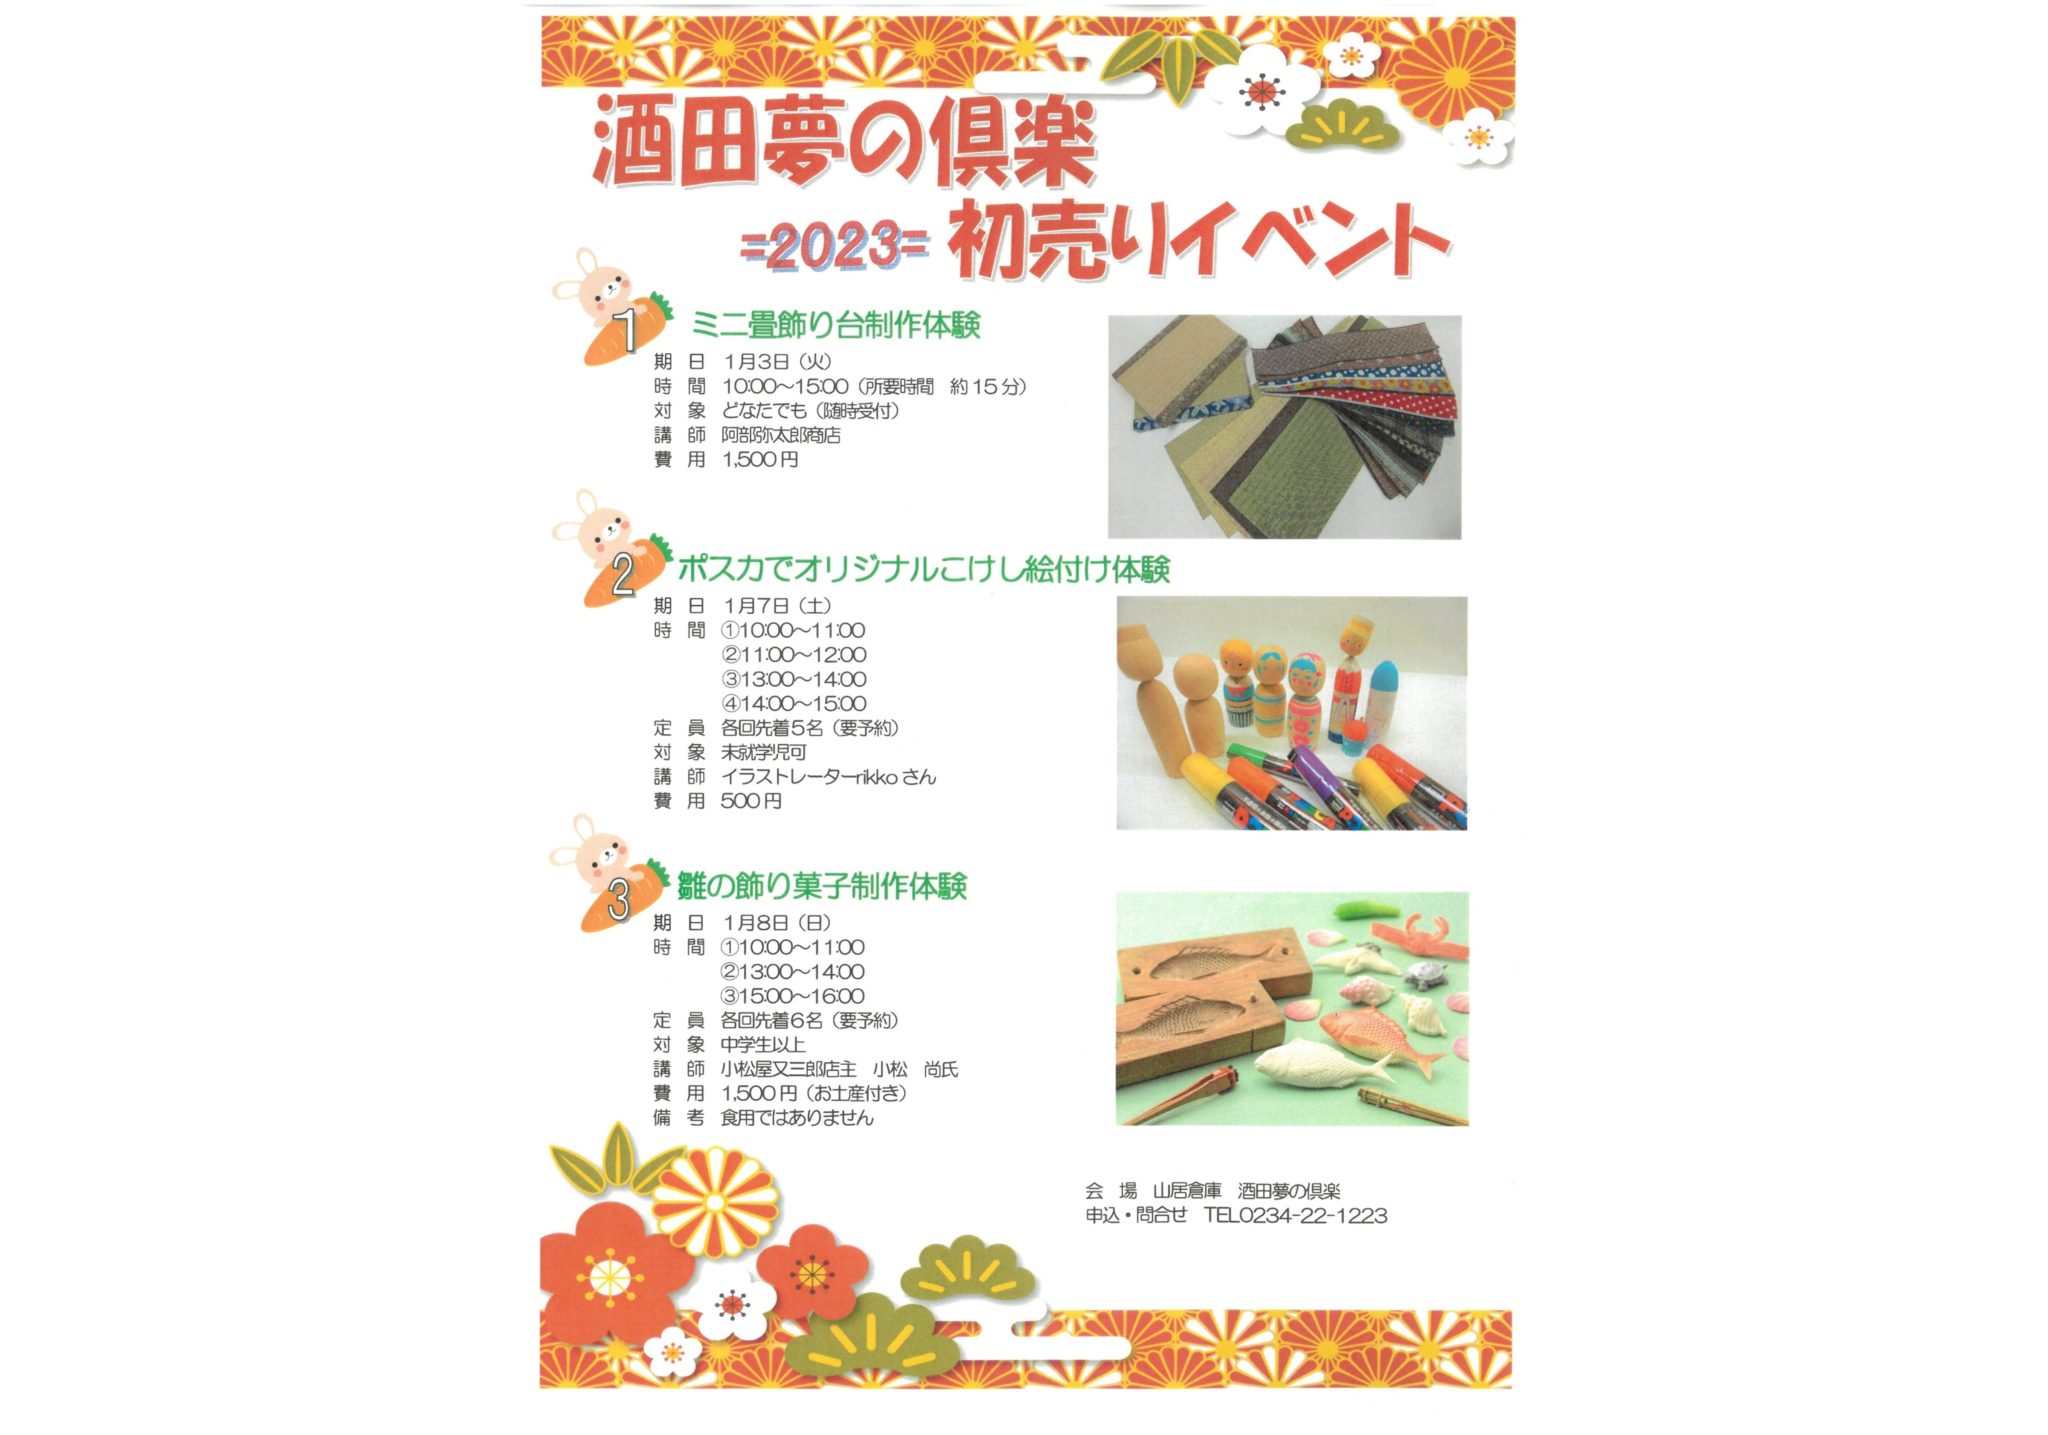 Sakata Yume-no-Kura 2023 New Year’s sale event